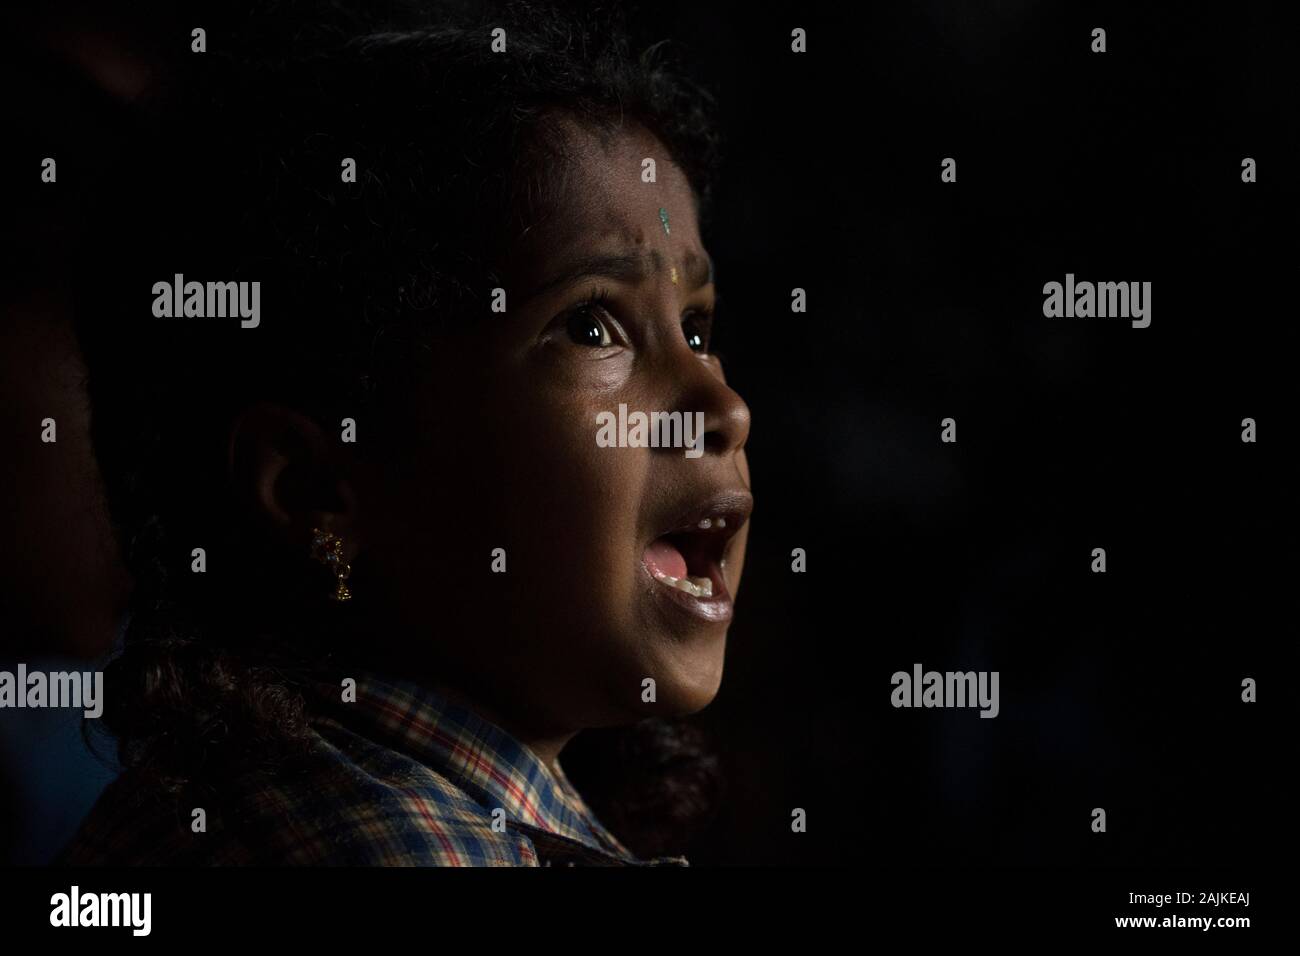 Portrait de la fille de village tribal des ghats occidentaux de l'Inde Banque D'Images